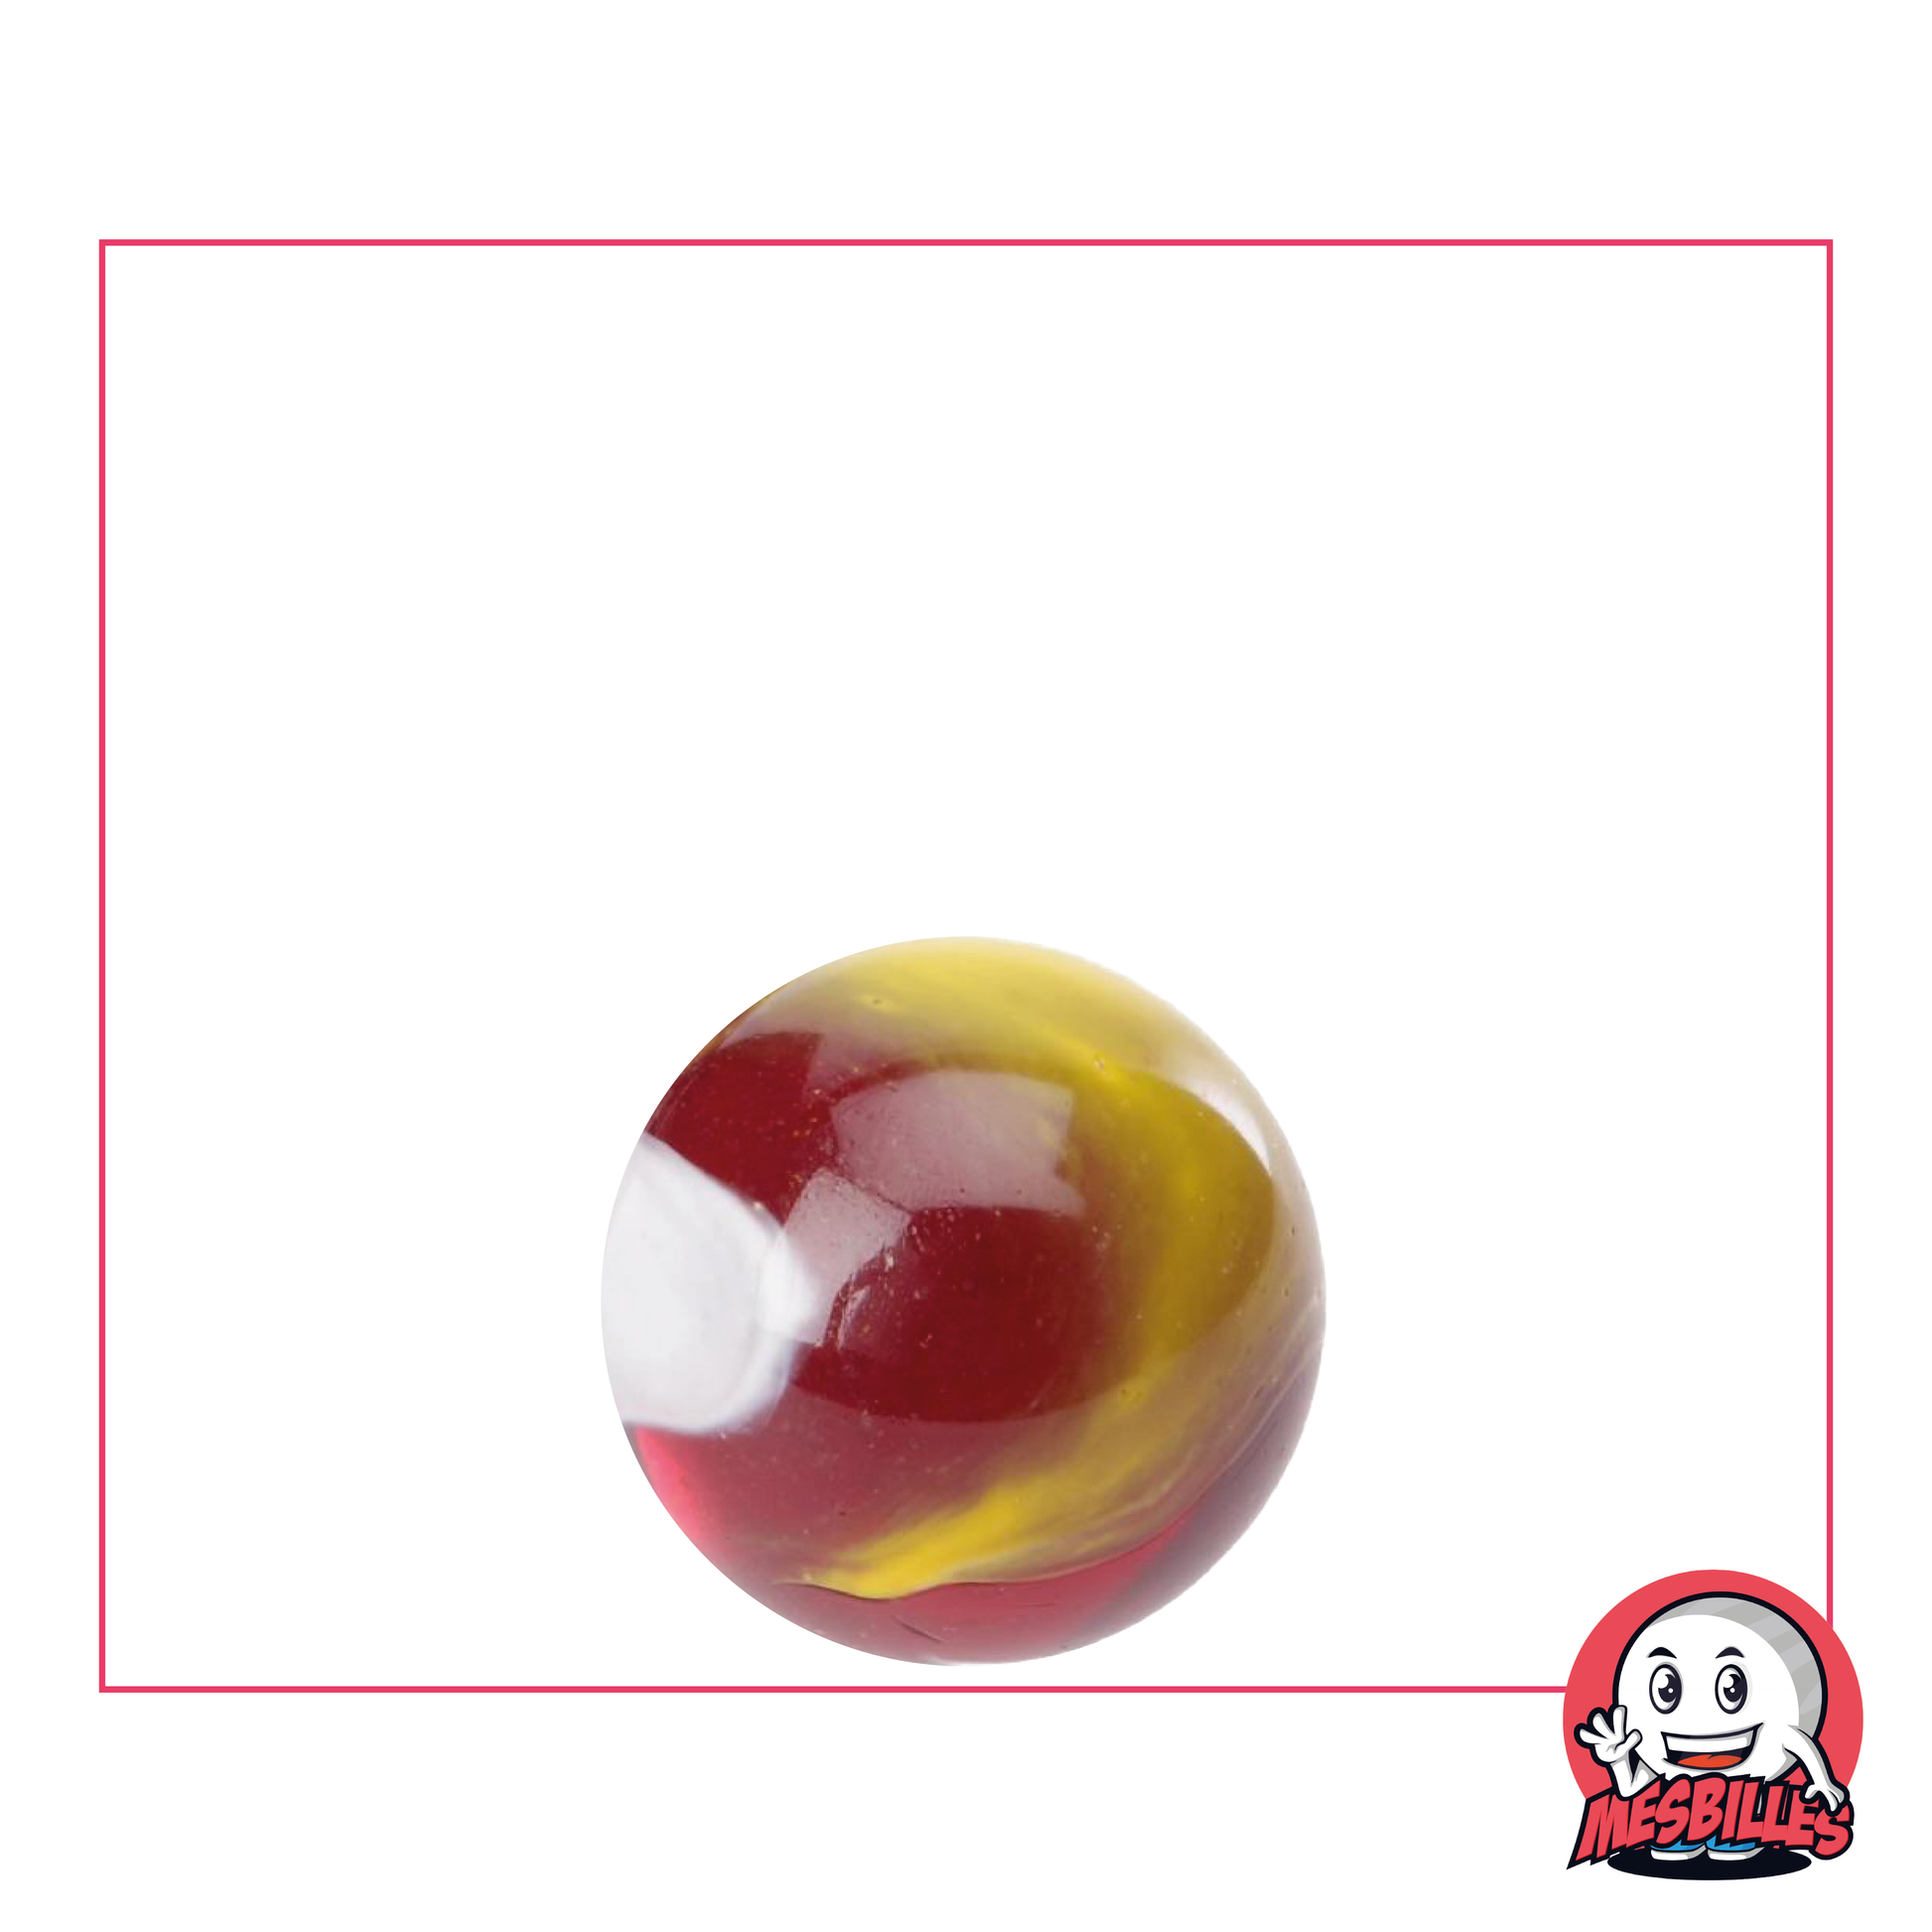 Bille Clown de 16 mm, bille ronde en verre translucide rouge avec en surface du blanc et jaune